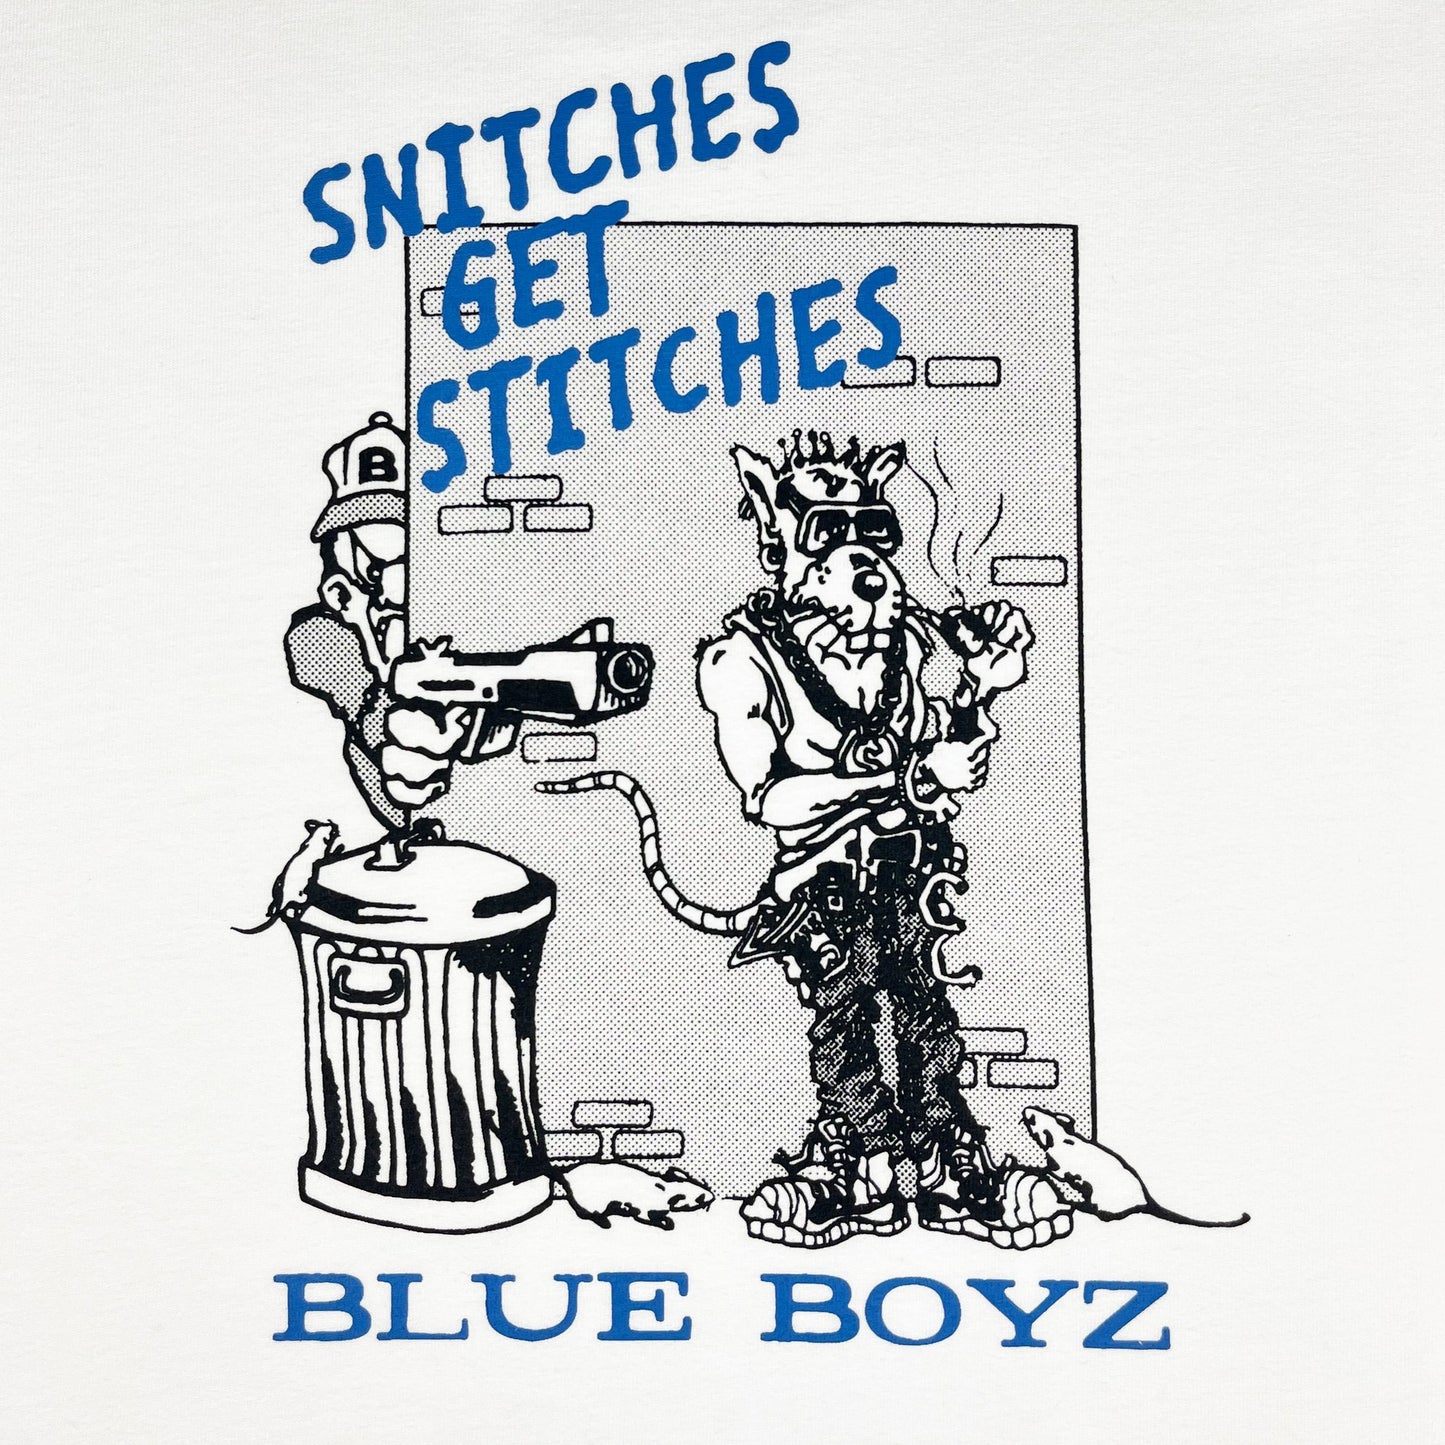 BlueBoyzSportsClub - Snitches Get Stitches Tee (white)